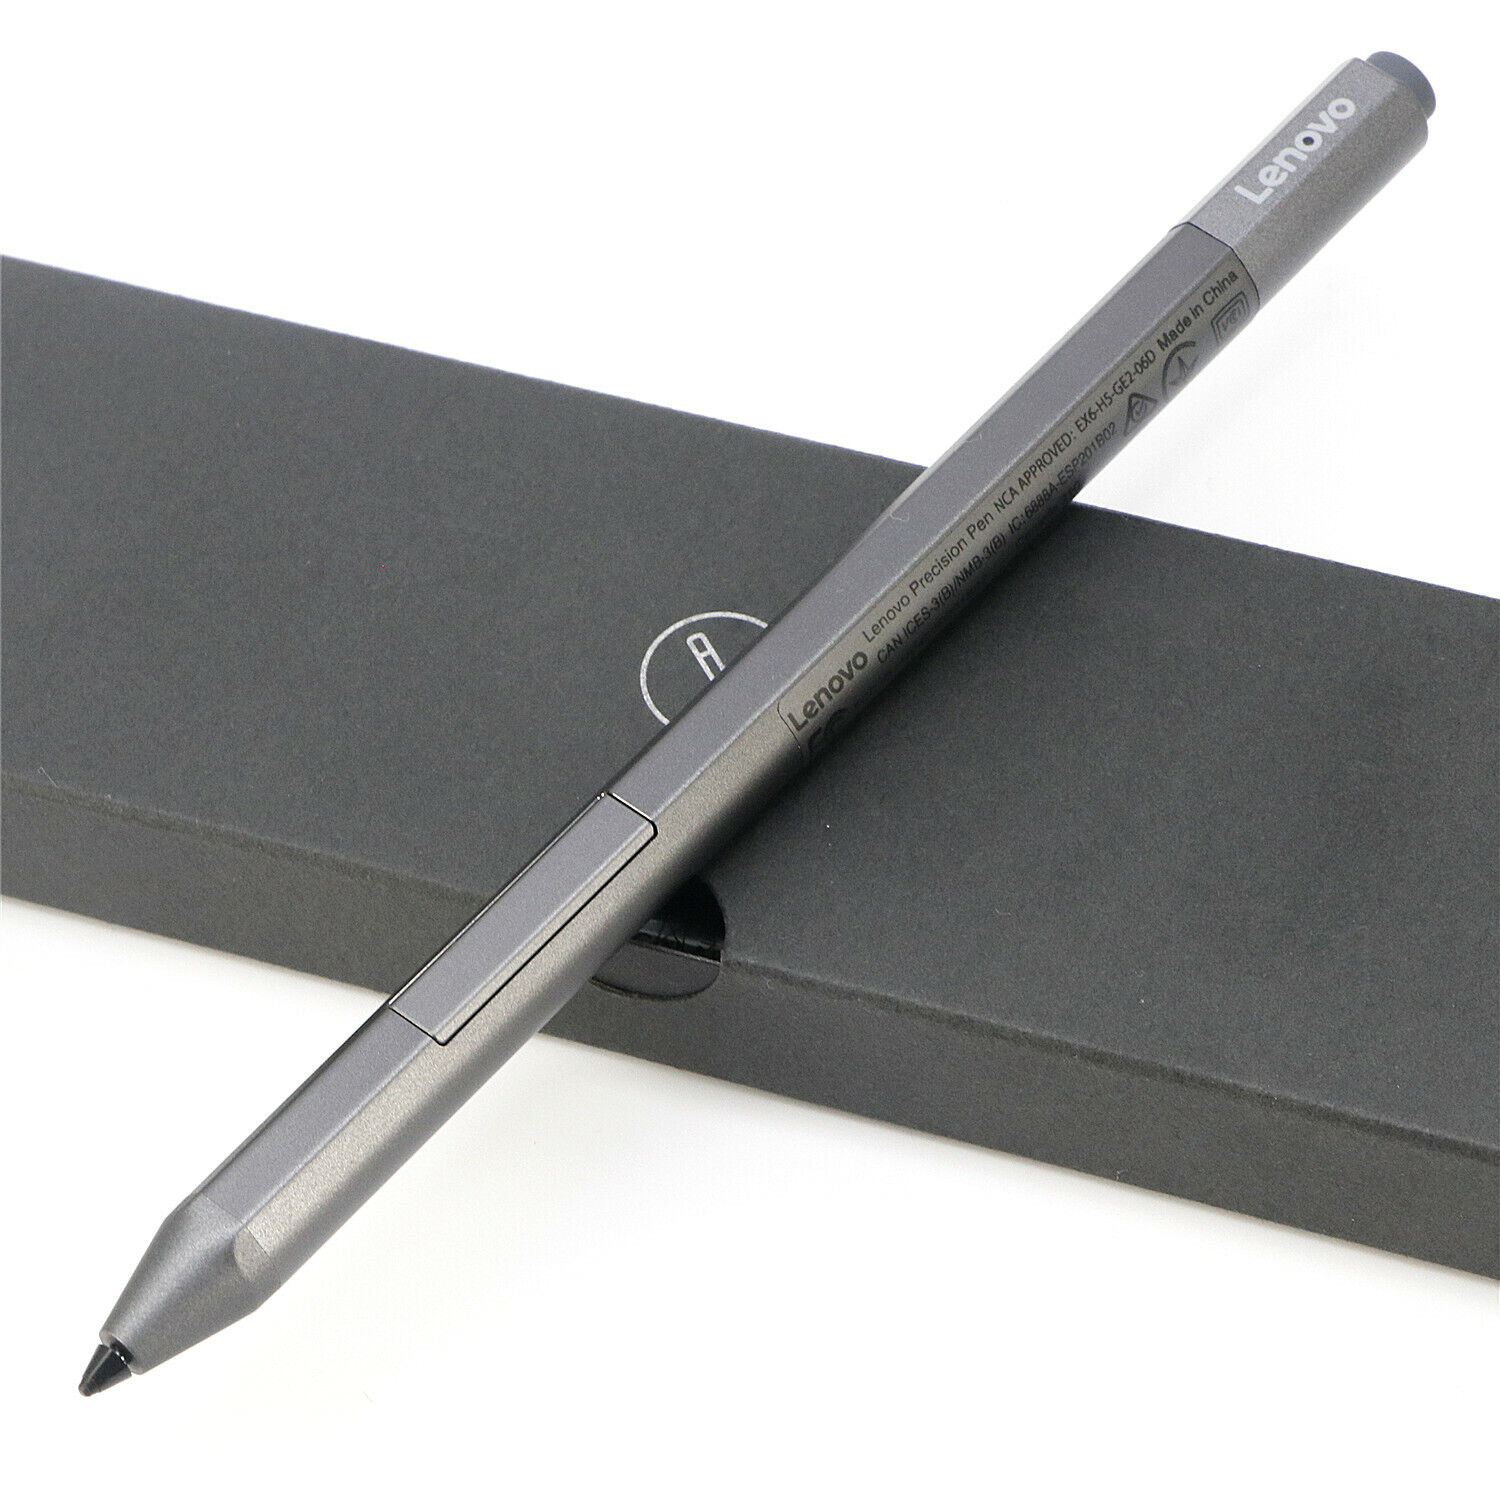 New Original Lenovo Precision pen For MIIX720 MIIX510 MIIX4 pro Yoga370 930 C930